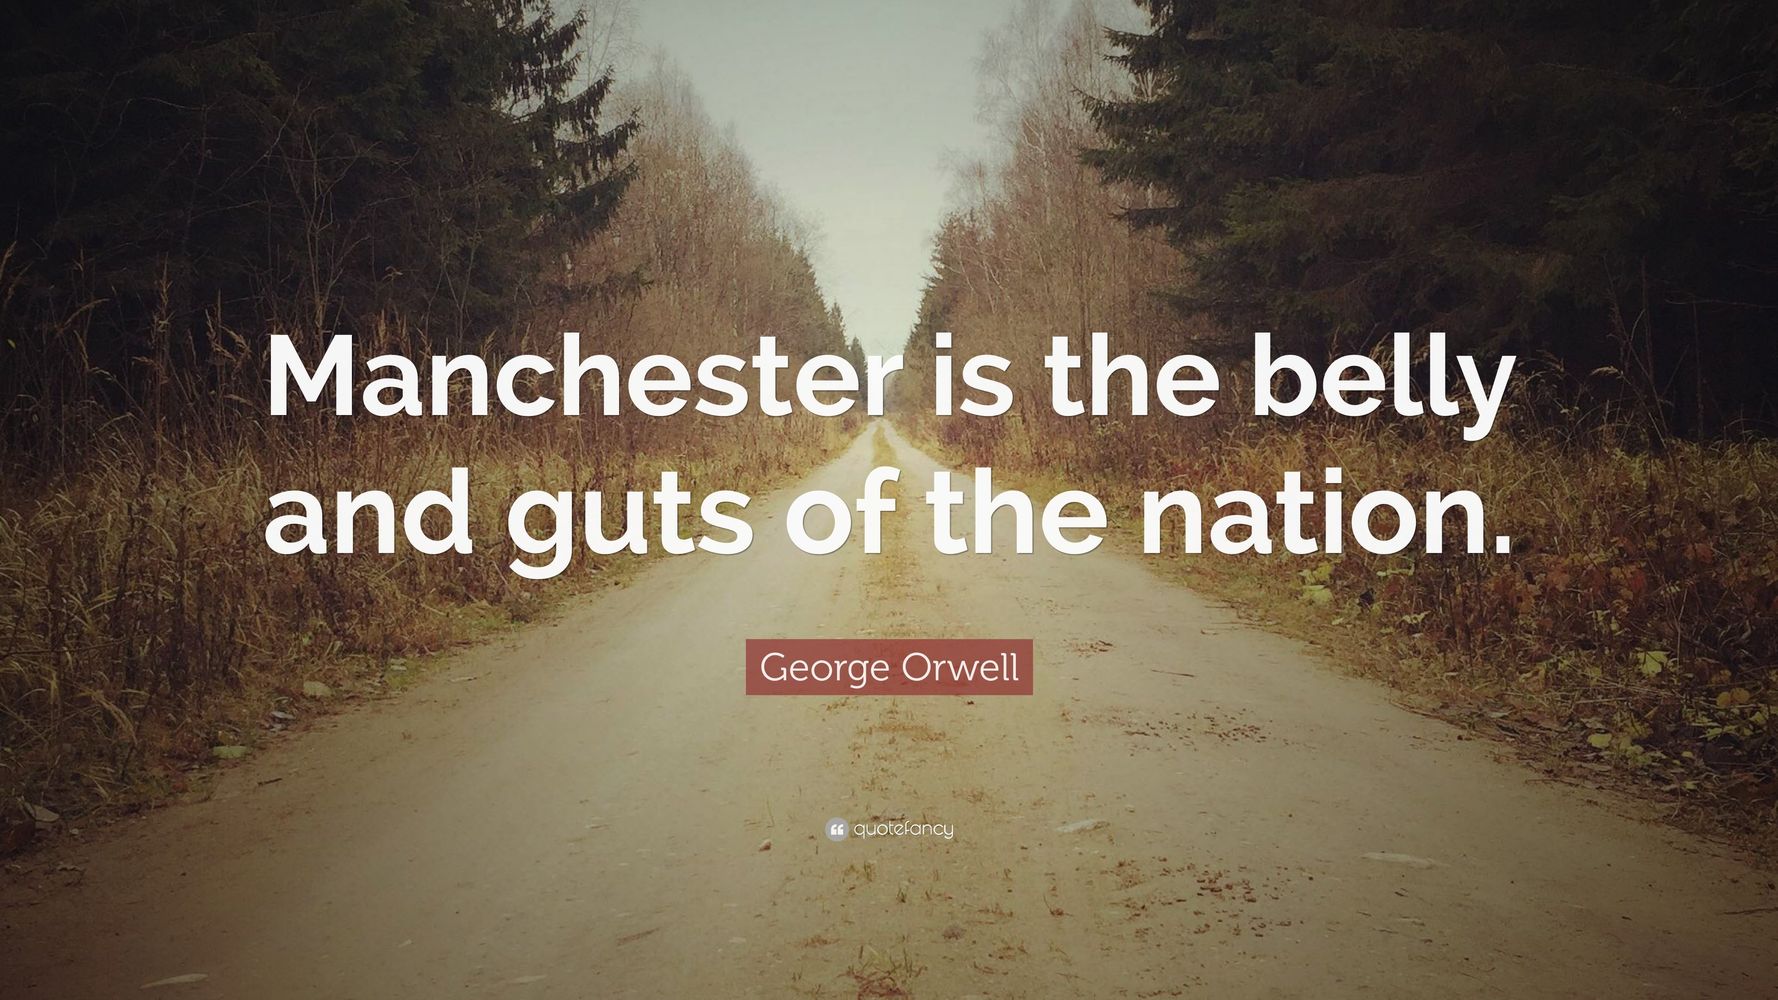 Apres L Attentat De Manchester Cette Citation De George Orwell Prend Un Nouveau Sens Le Huffpost